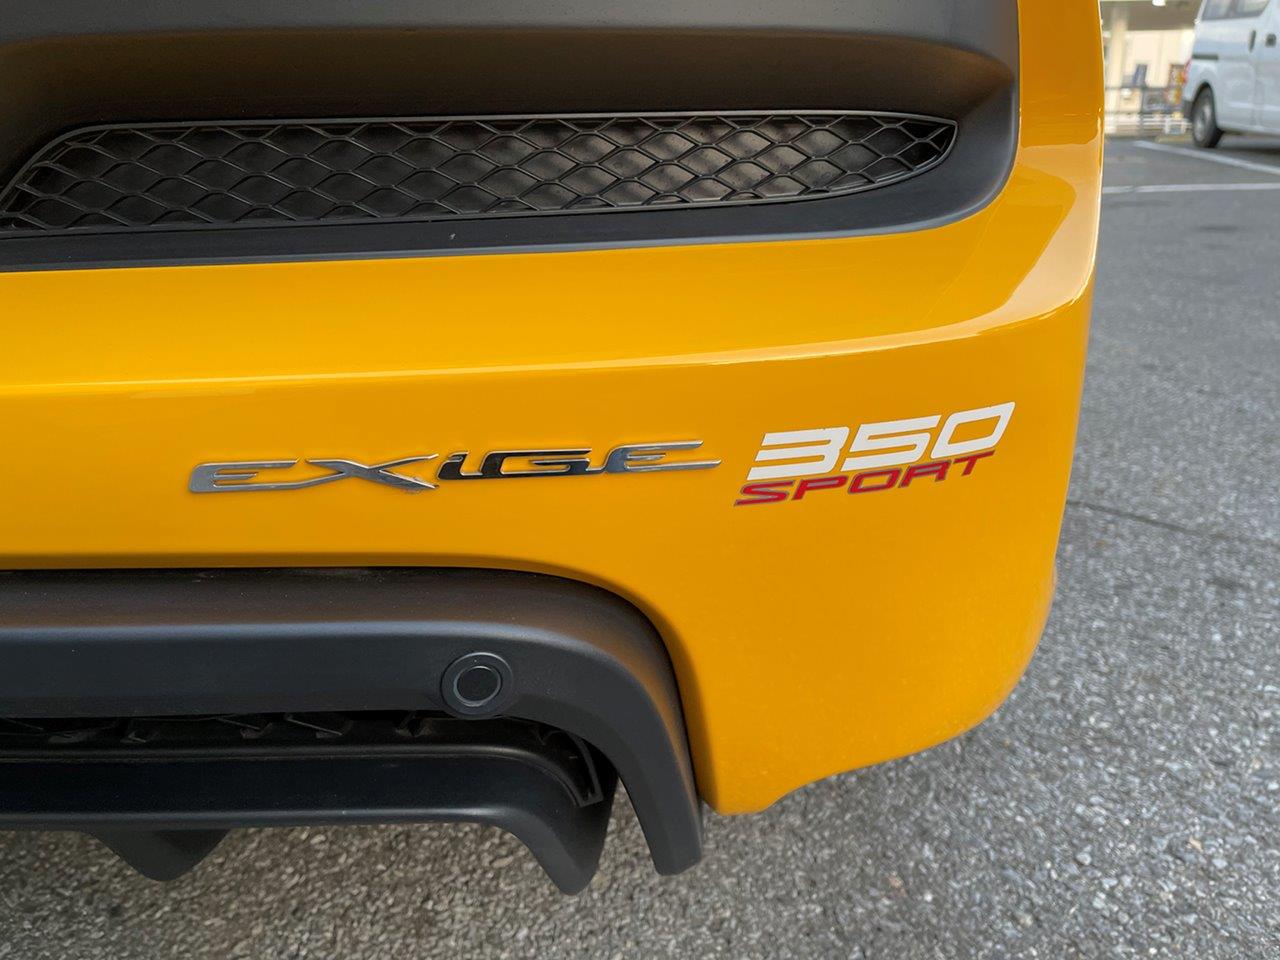 SOLD OUT 特選中古車 ロータス V6 エキシージ スポーツ350 2017年モデル ソリッドイエロー 走行8,998㎞